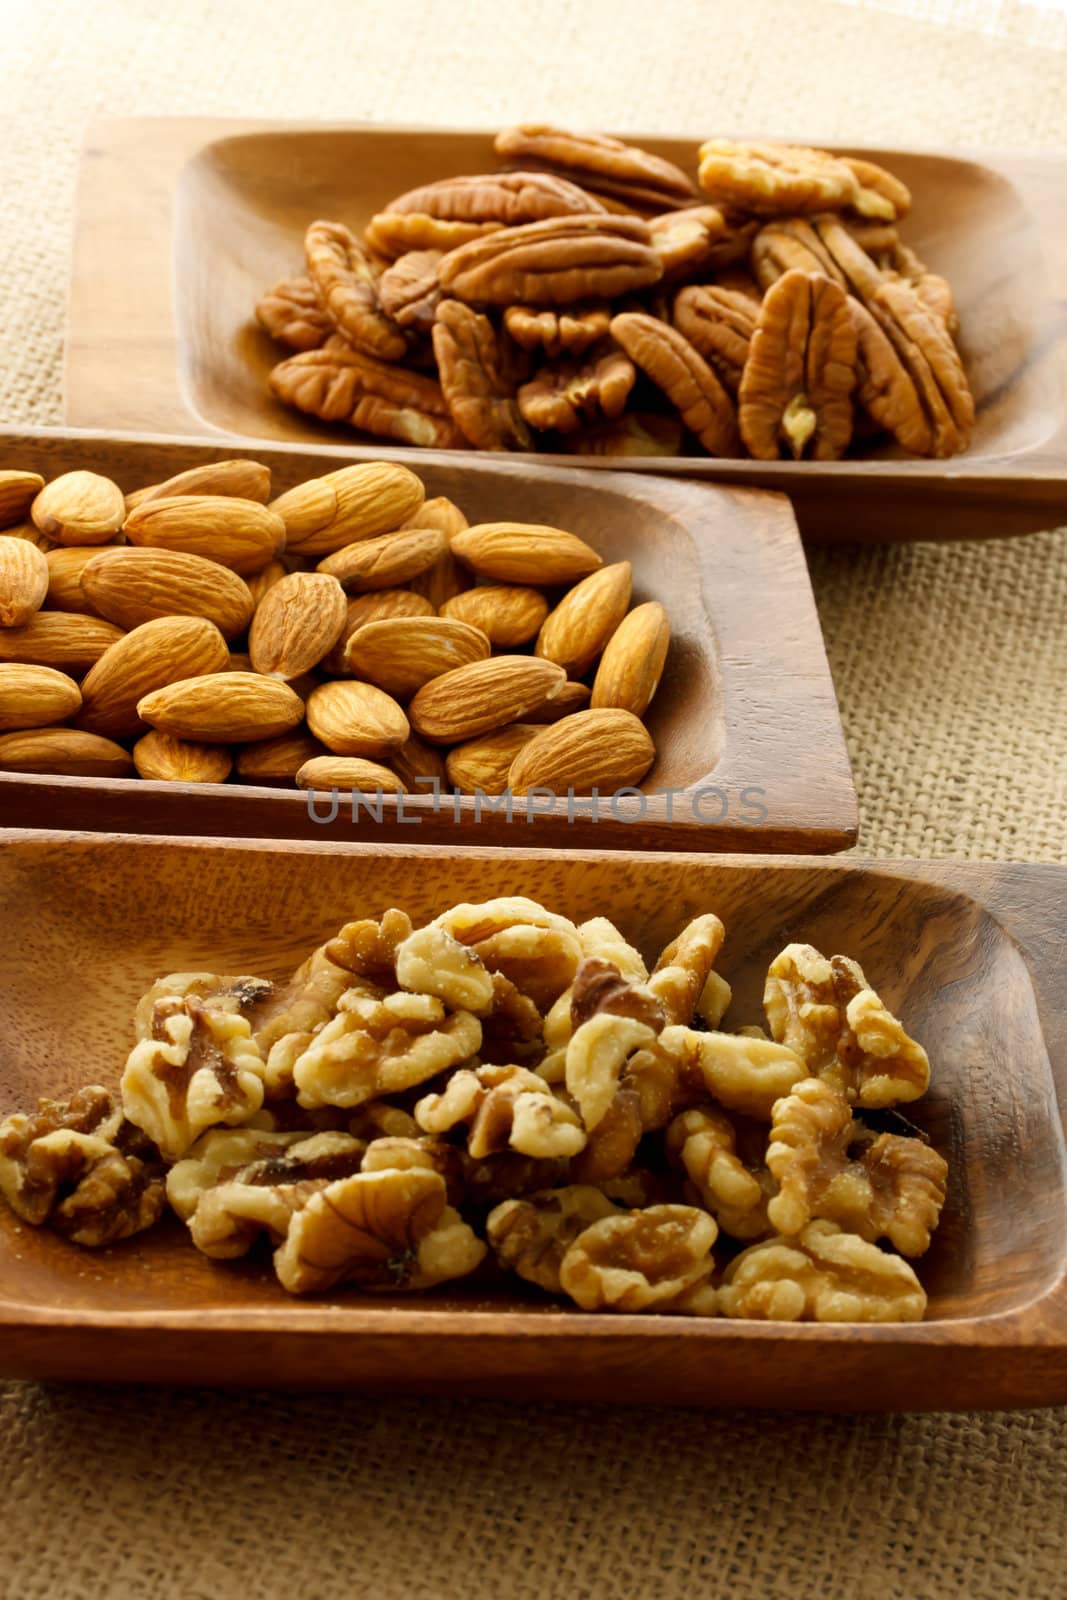 Nuts in wooden plates by melpomene